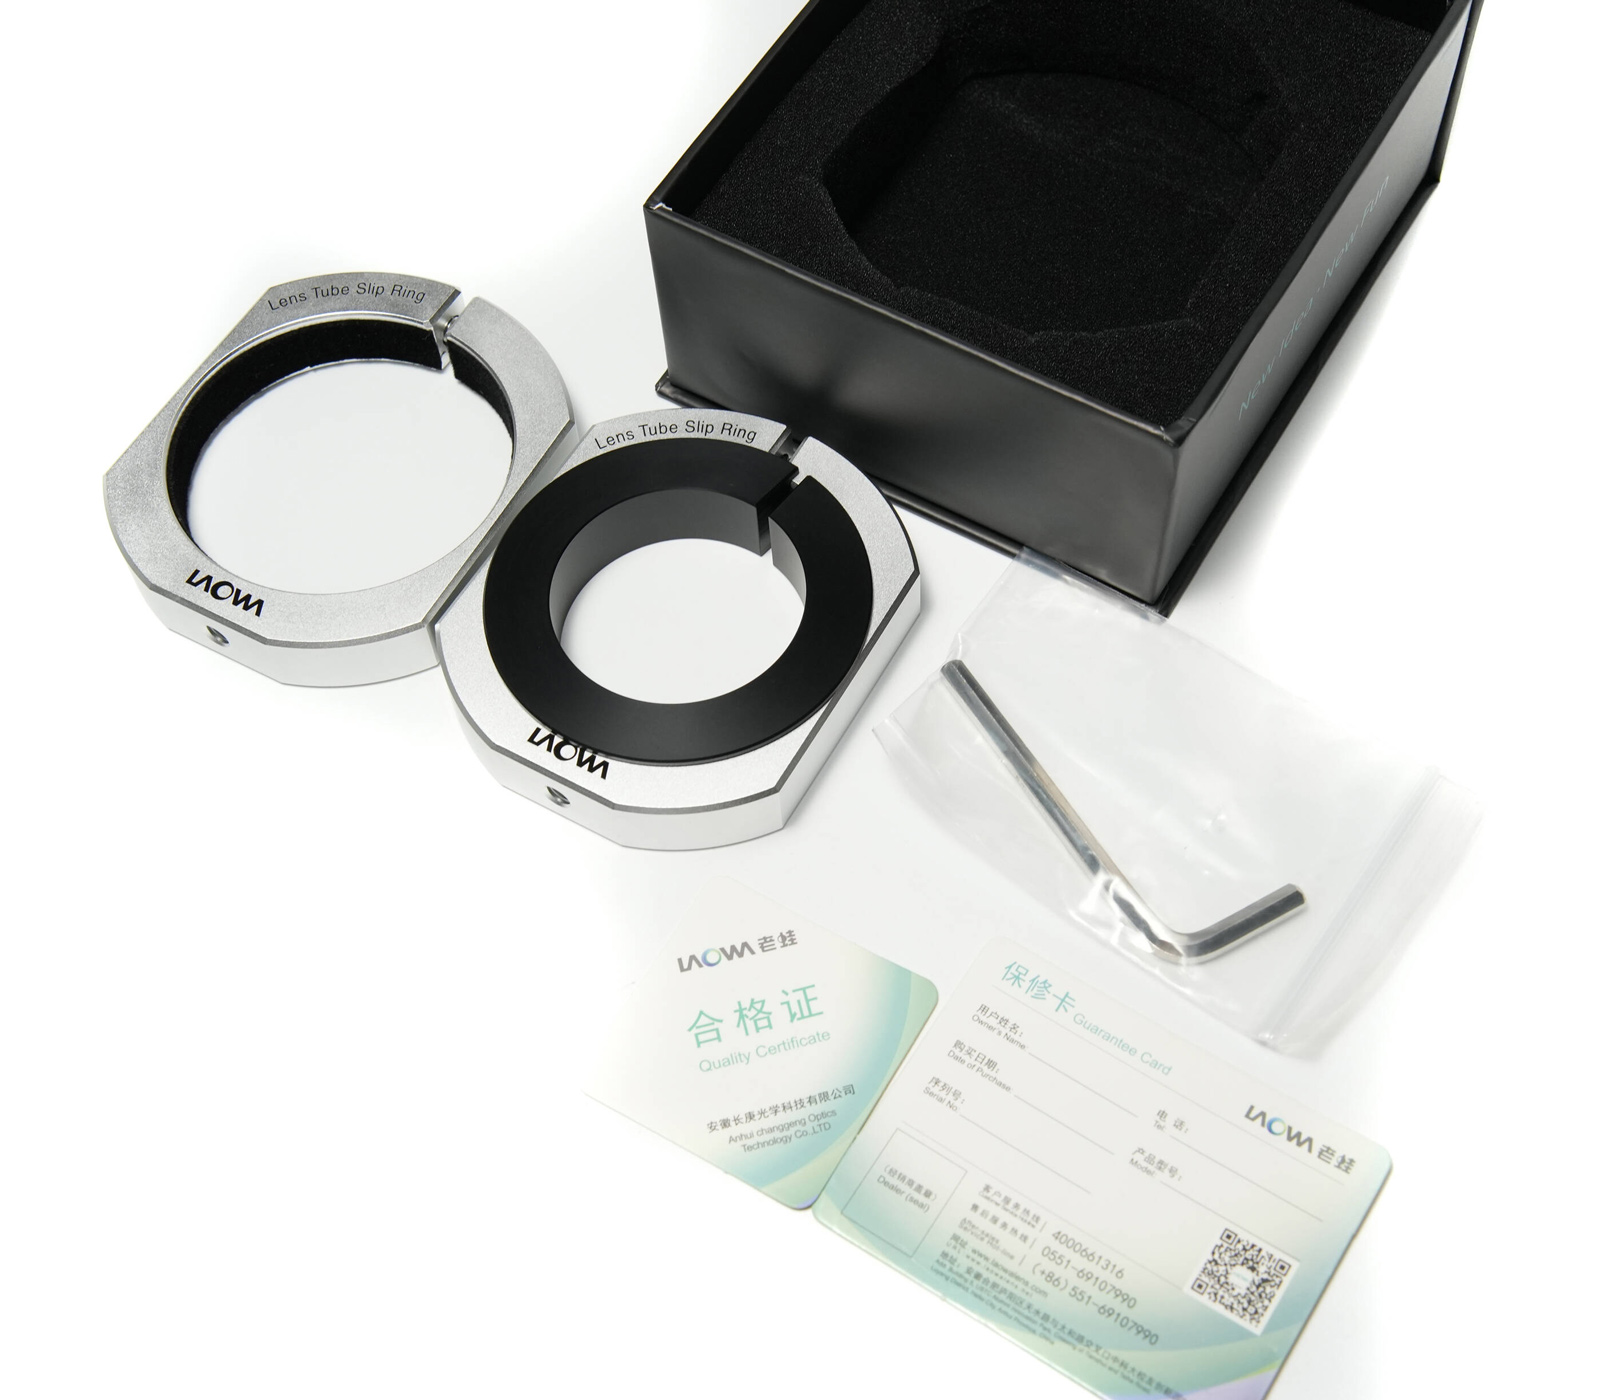 Aurogon 2x Lens Tube Slip Ring